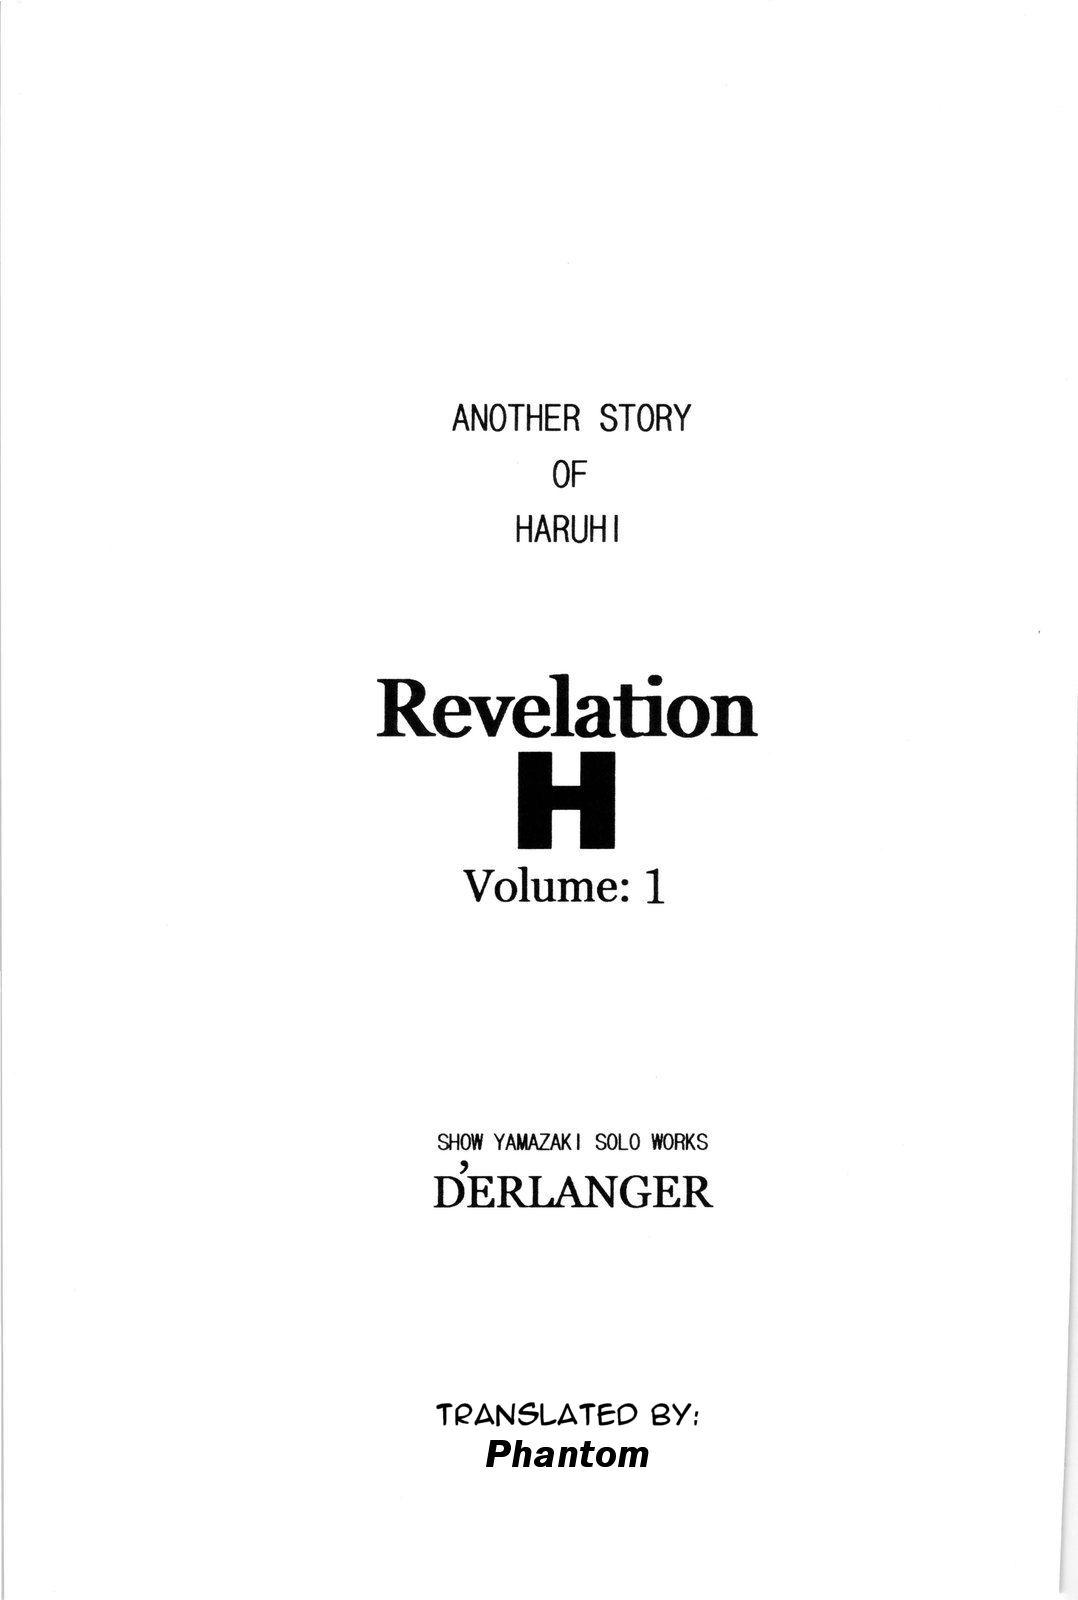 Italian Revelation H Volume: 1 - The melancholy of haruhi suzumiya Roundass - Page 2